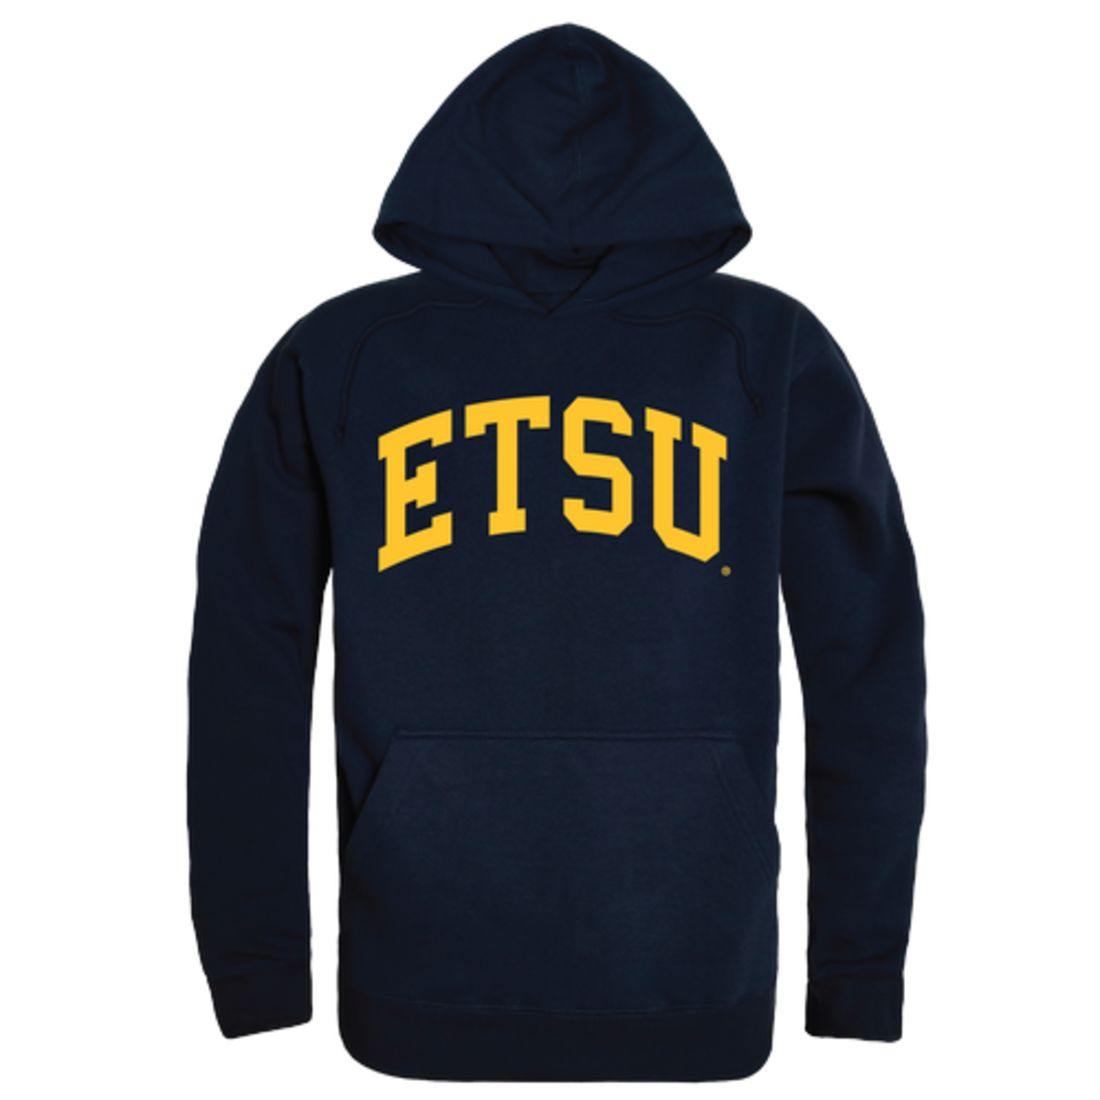 ETSU East Tennessee State University Buccaneers College Hoodie Sweatshirt Navy-Campus-Wardrobe